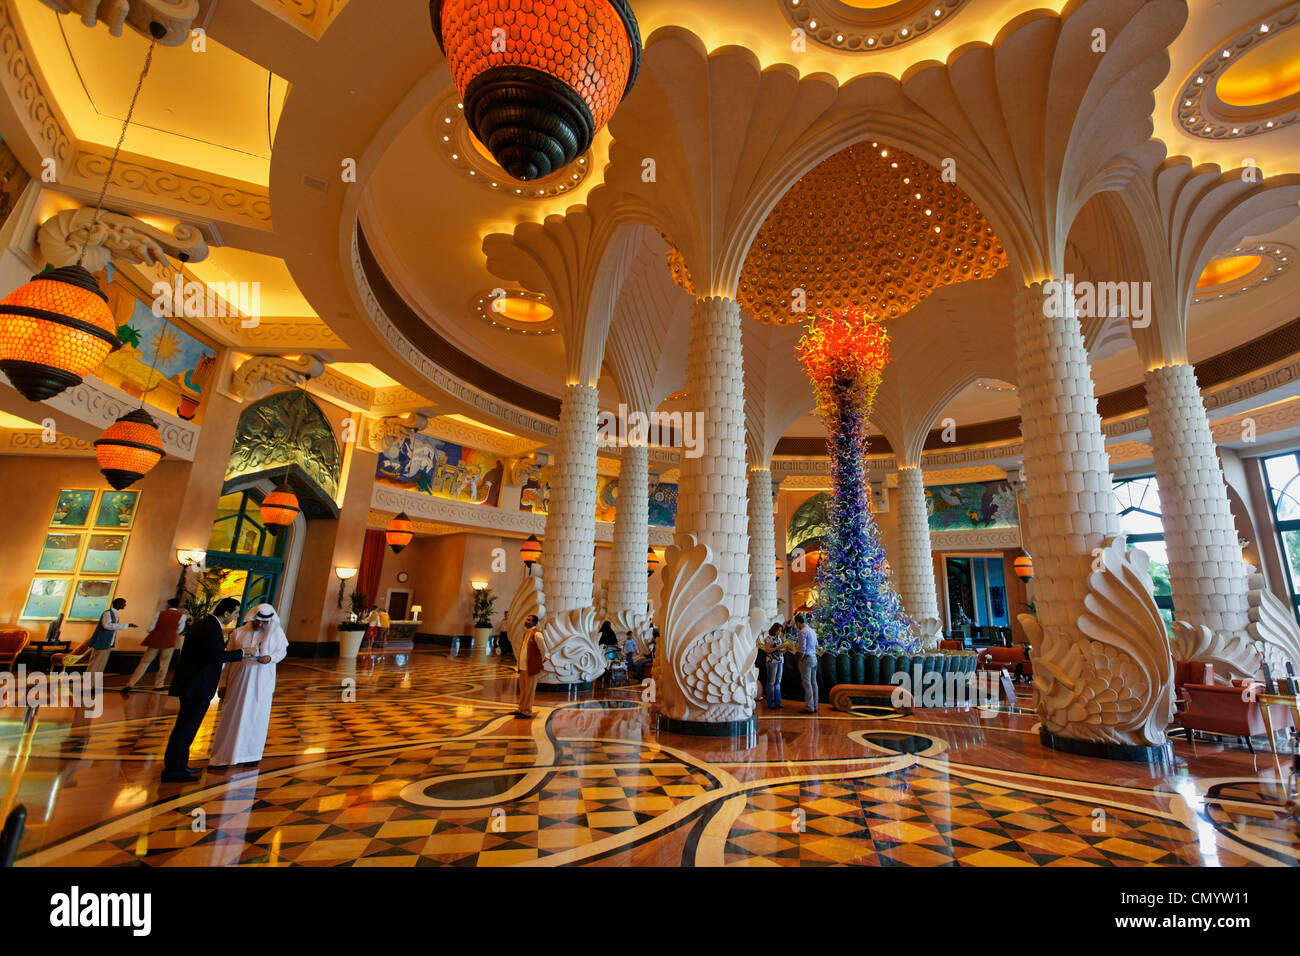 Lobby of Atlantis Hotel, The Palm Jumeirah, Dubai Stock Photo